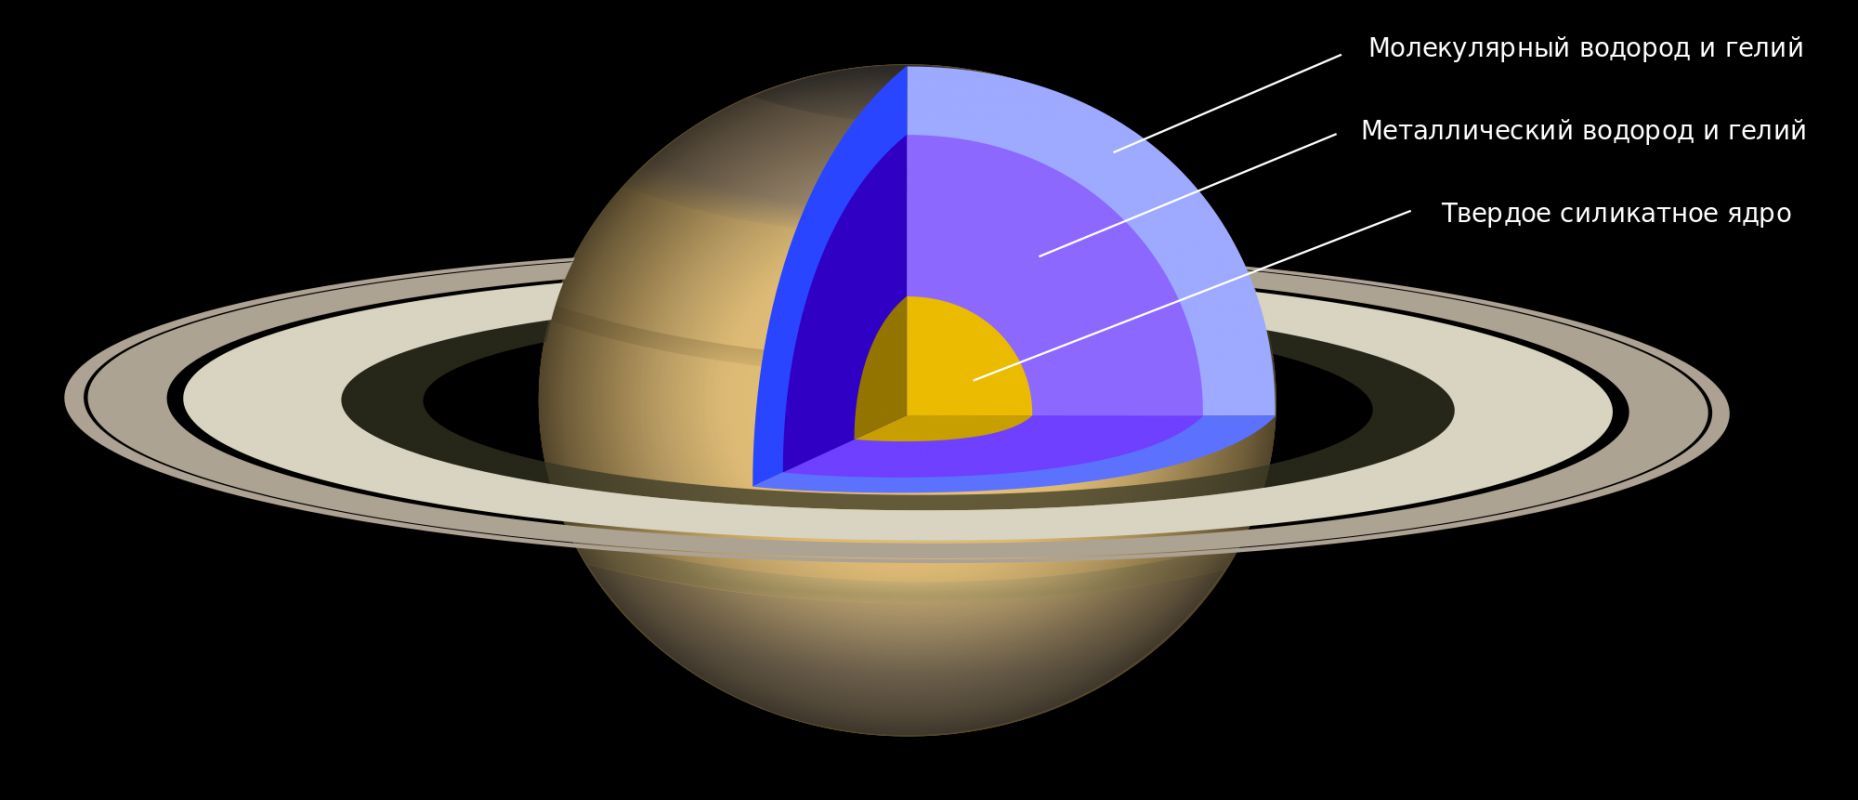 Окольцованный гигант — всё о планете Сатурн